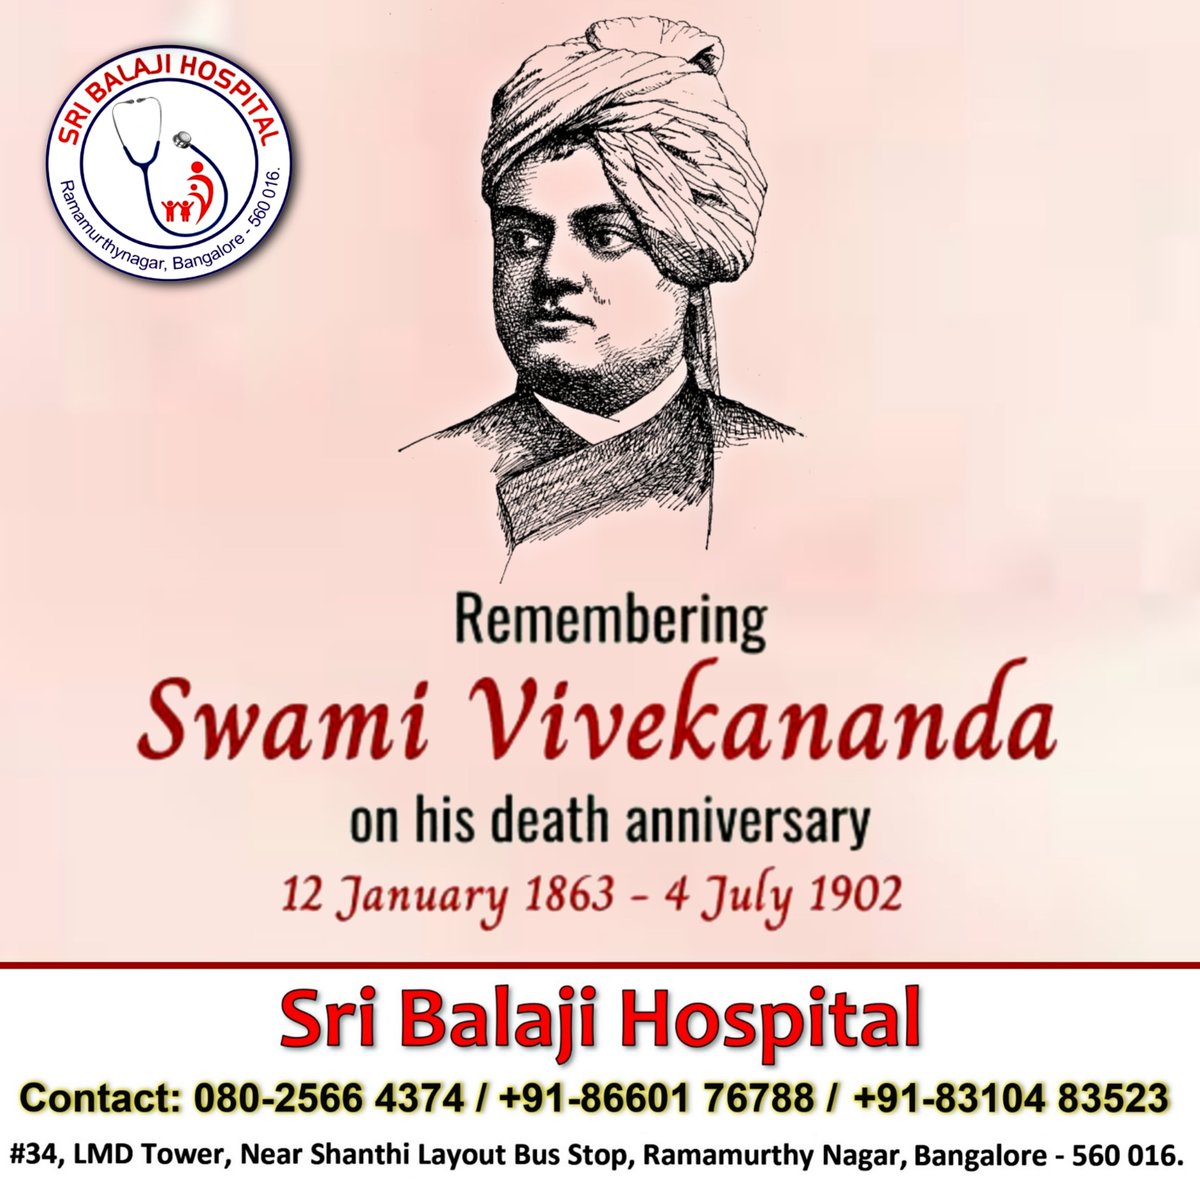 Remembering Swami Vivekananda on his death anniversary.

#SwamiVivekananda #SriBalajiHospital